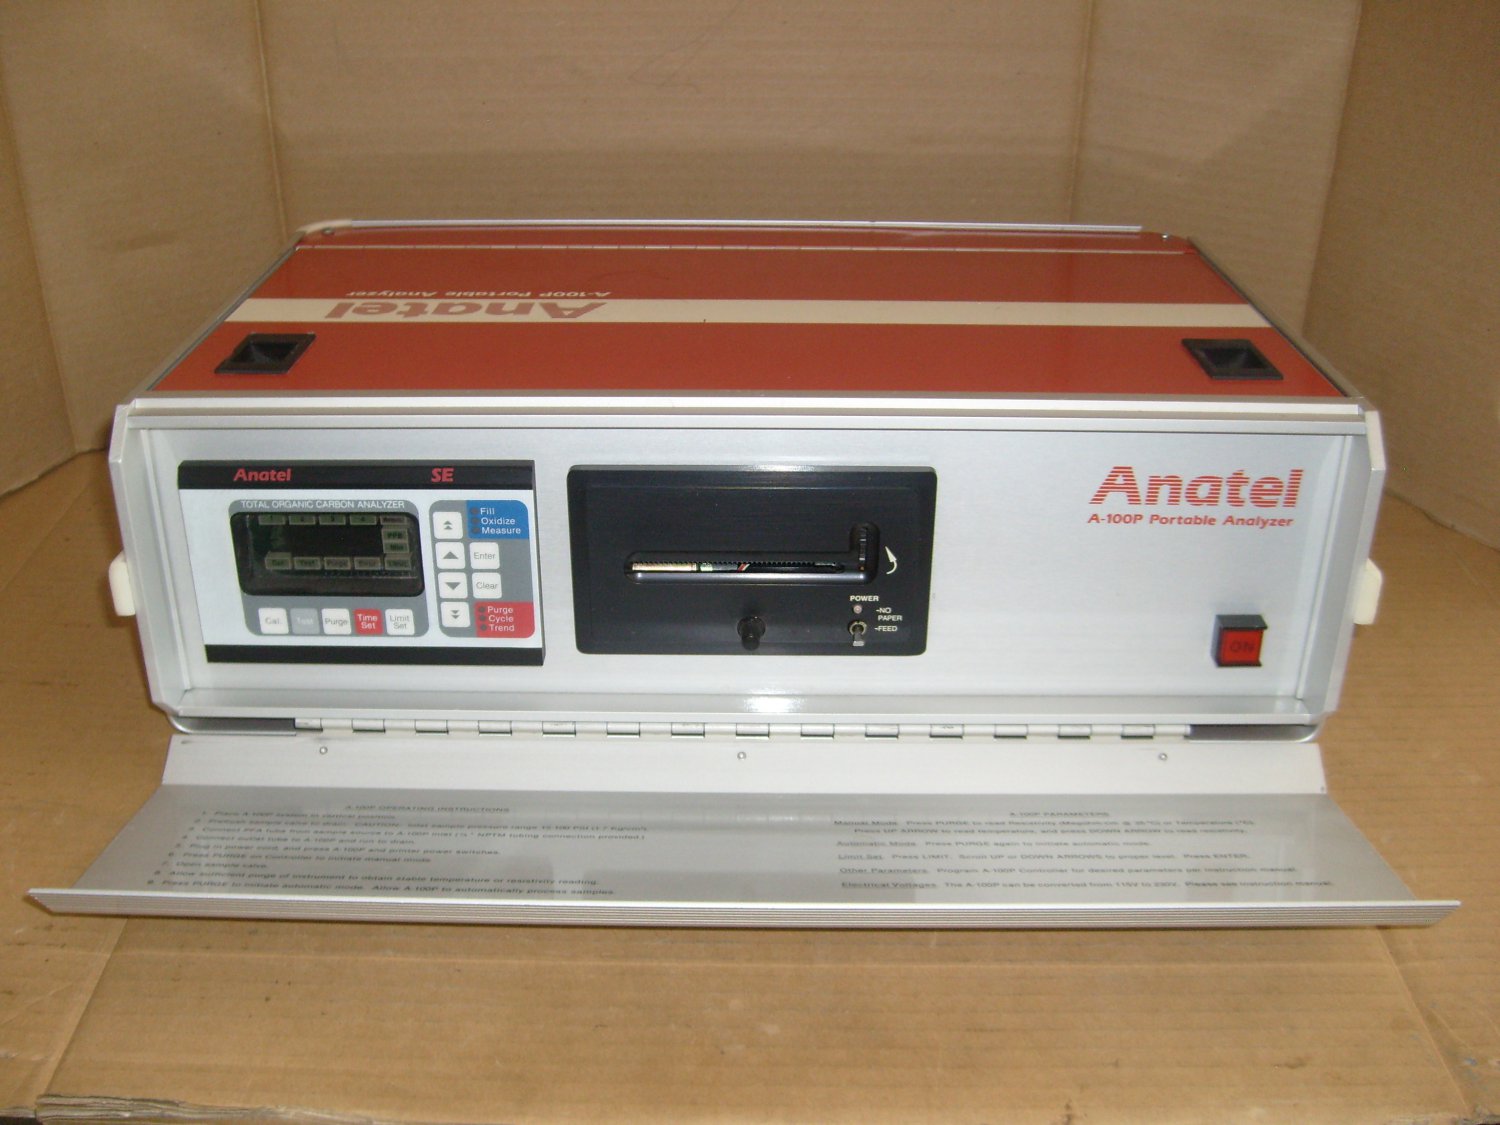 Anatel A-100 Portable Total Organic Carbon Analyzer FG10100-01